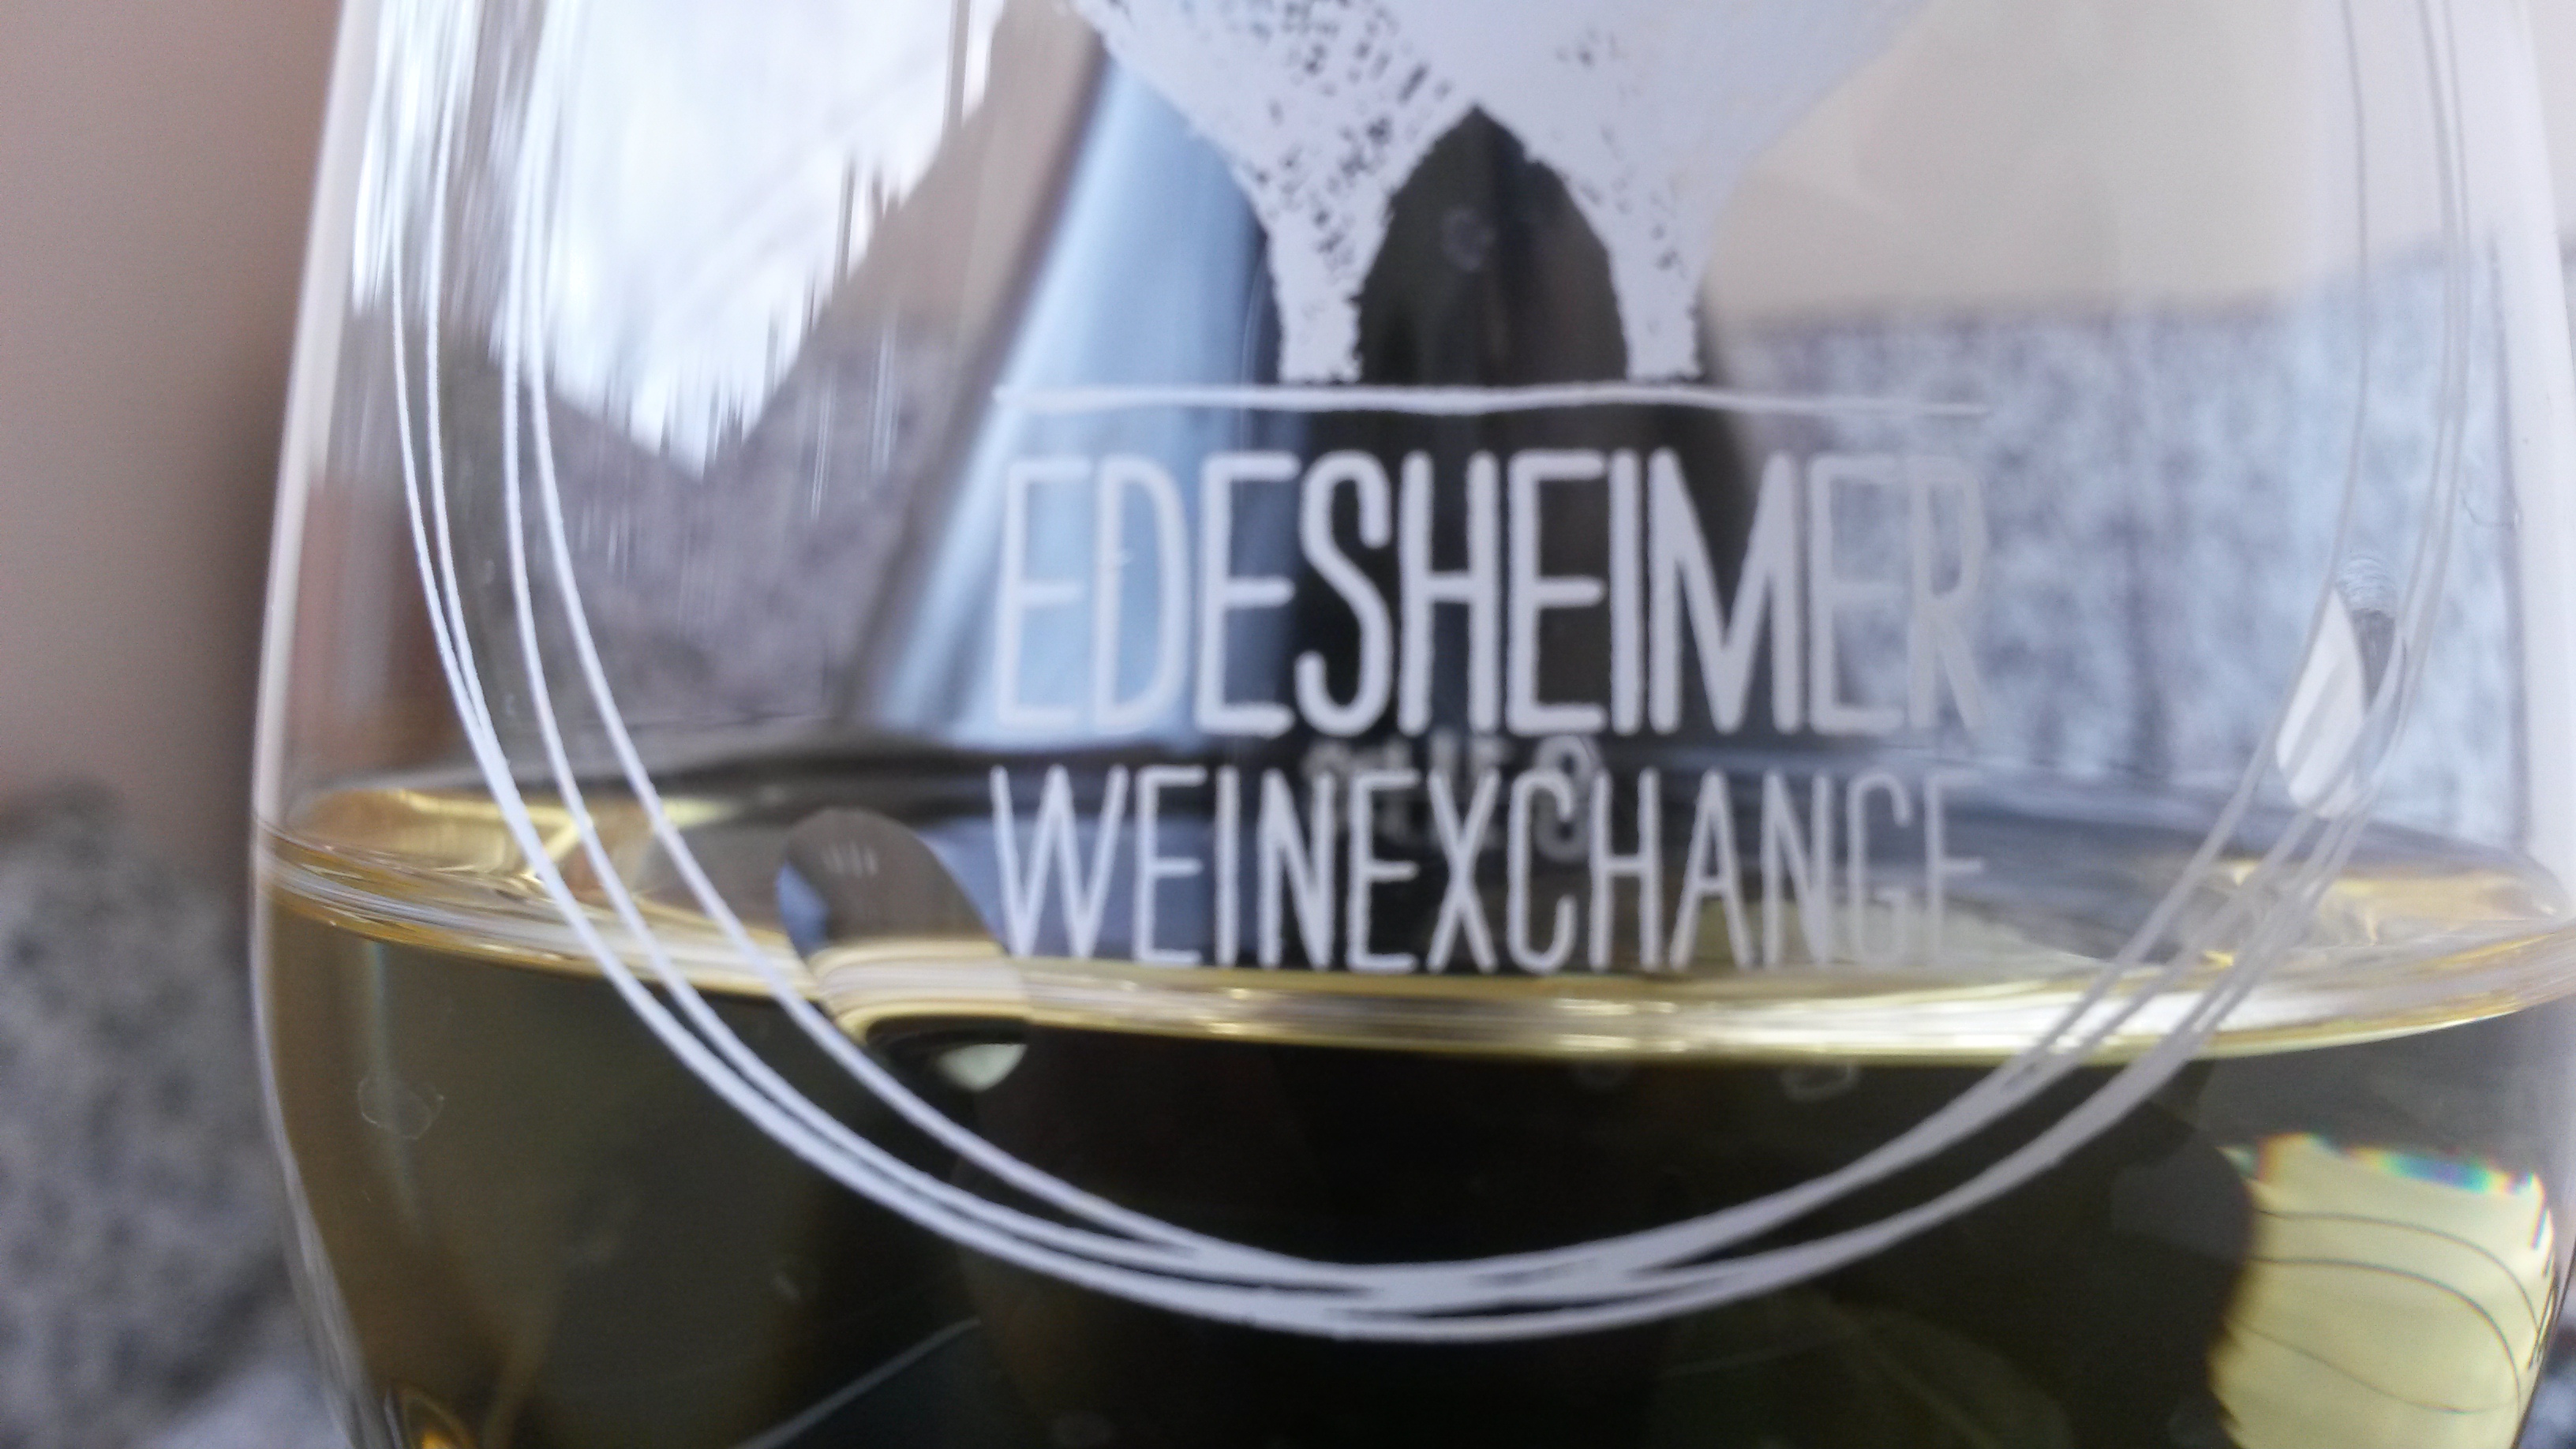 Edesheimer Weinexchange 2014